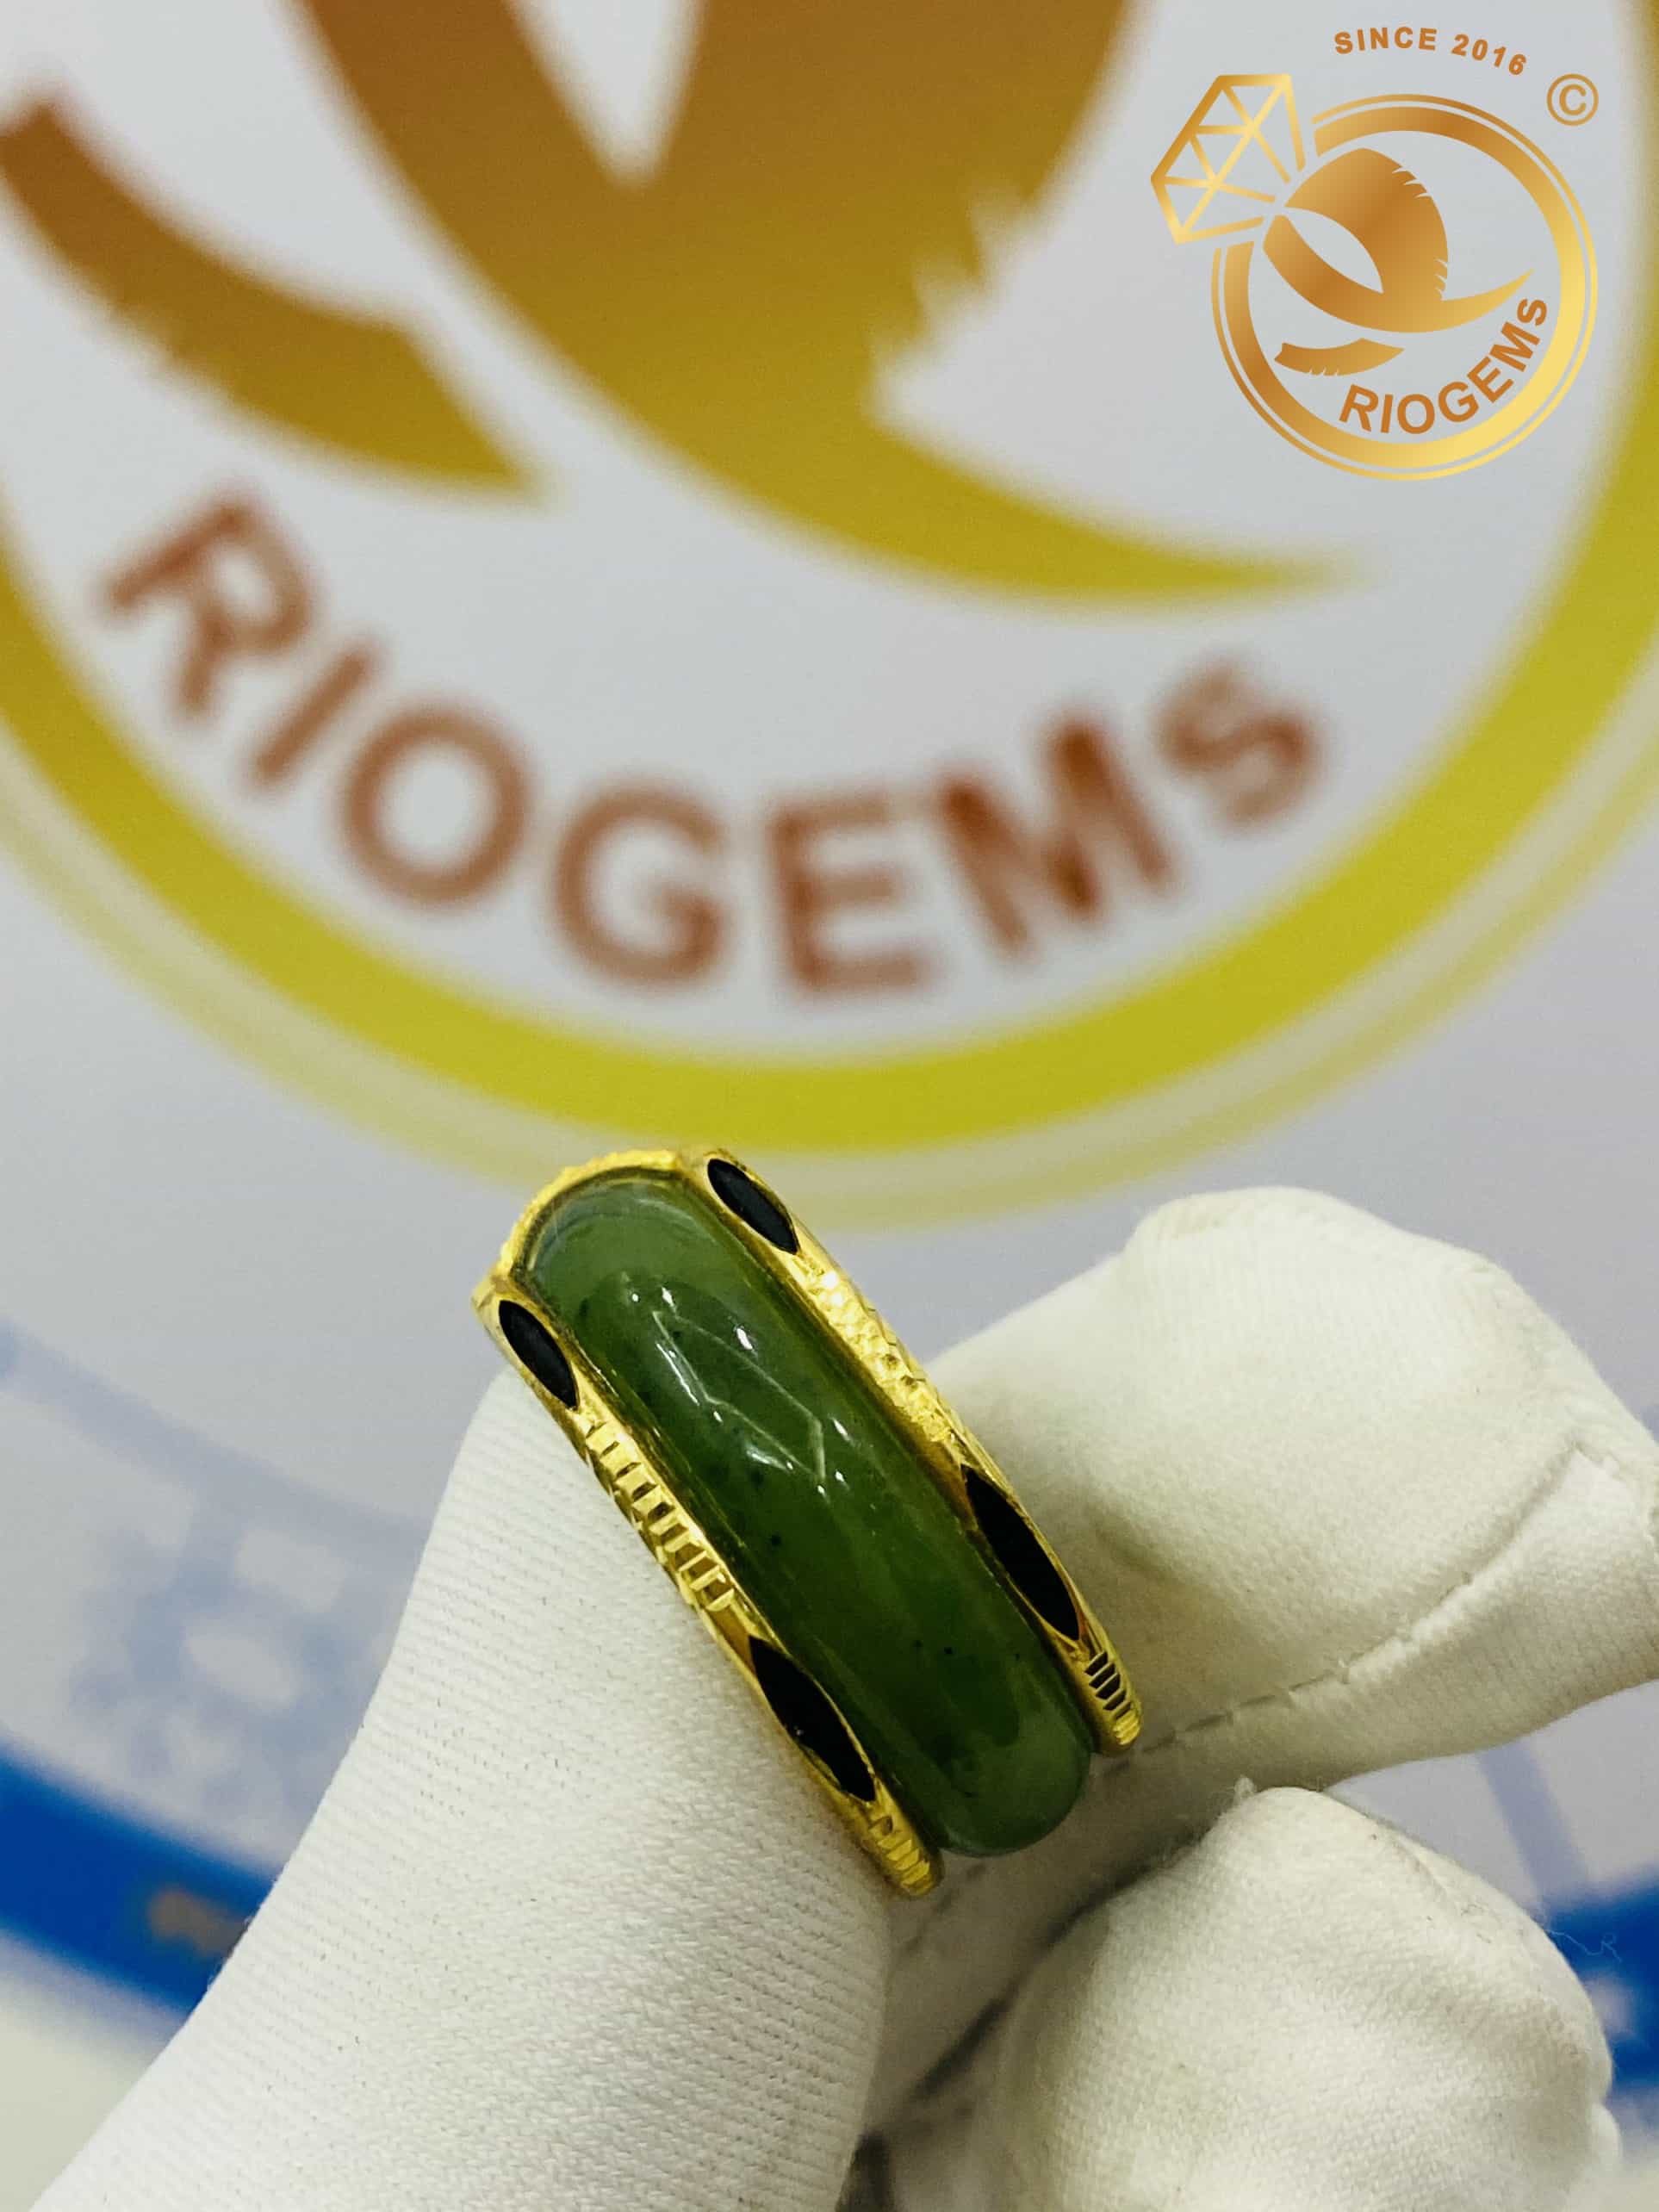 Nhẫn Ngọc Bích hạng B bọc Vàng 18K bảng 6mm 2 đường lông voi (lông FAKE) Riogems